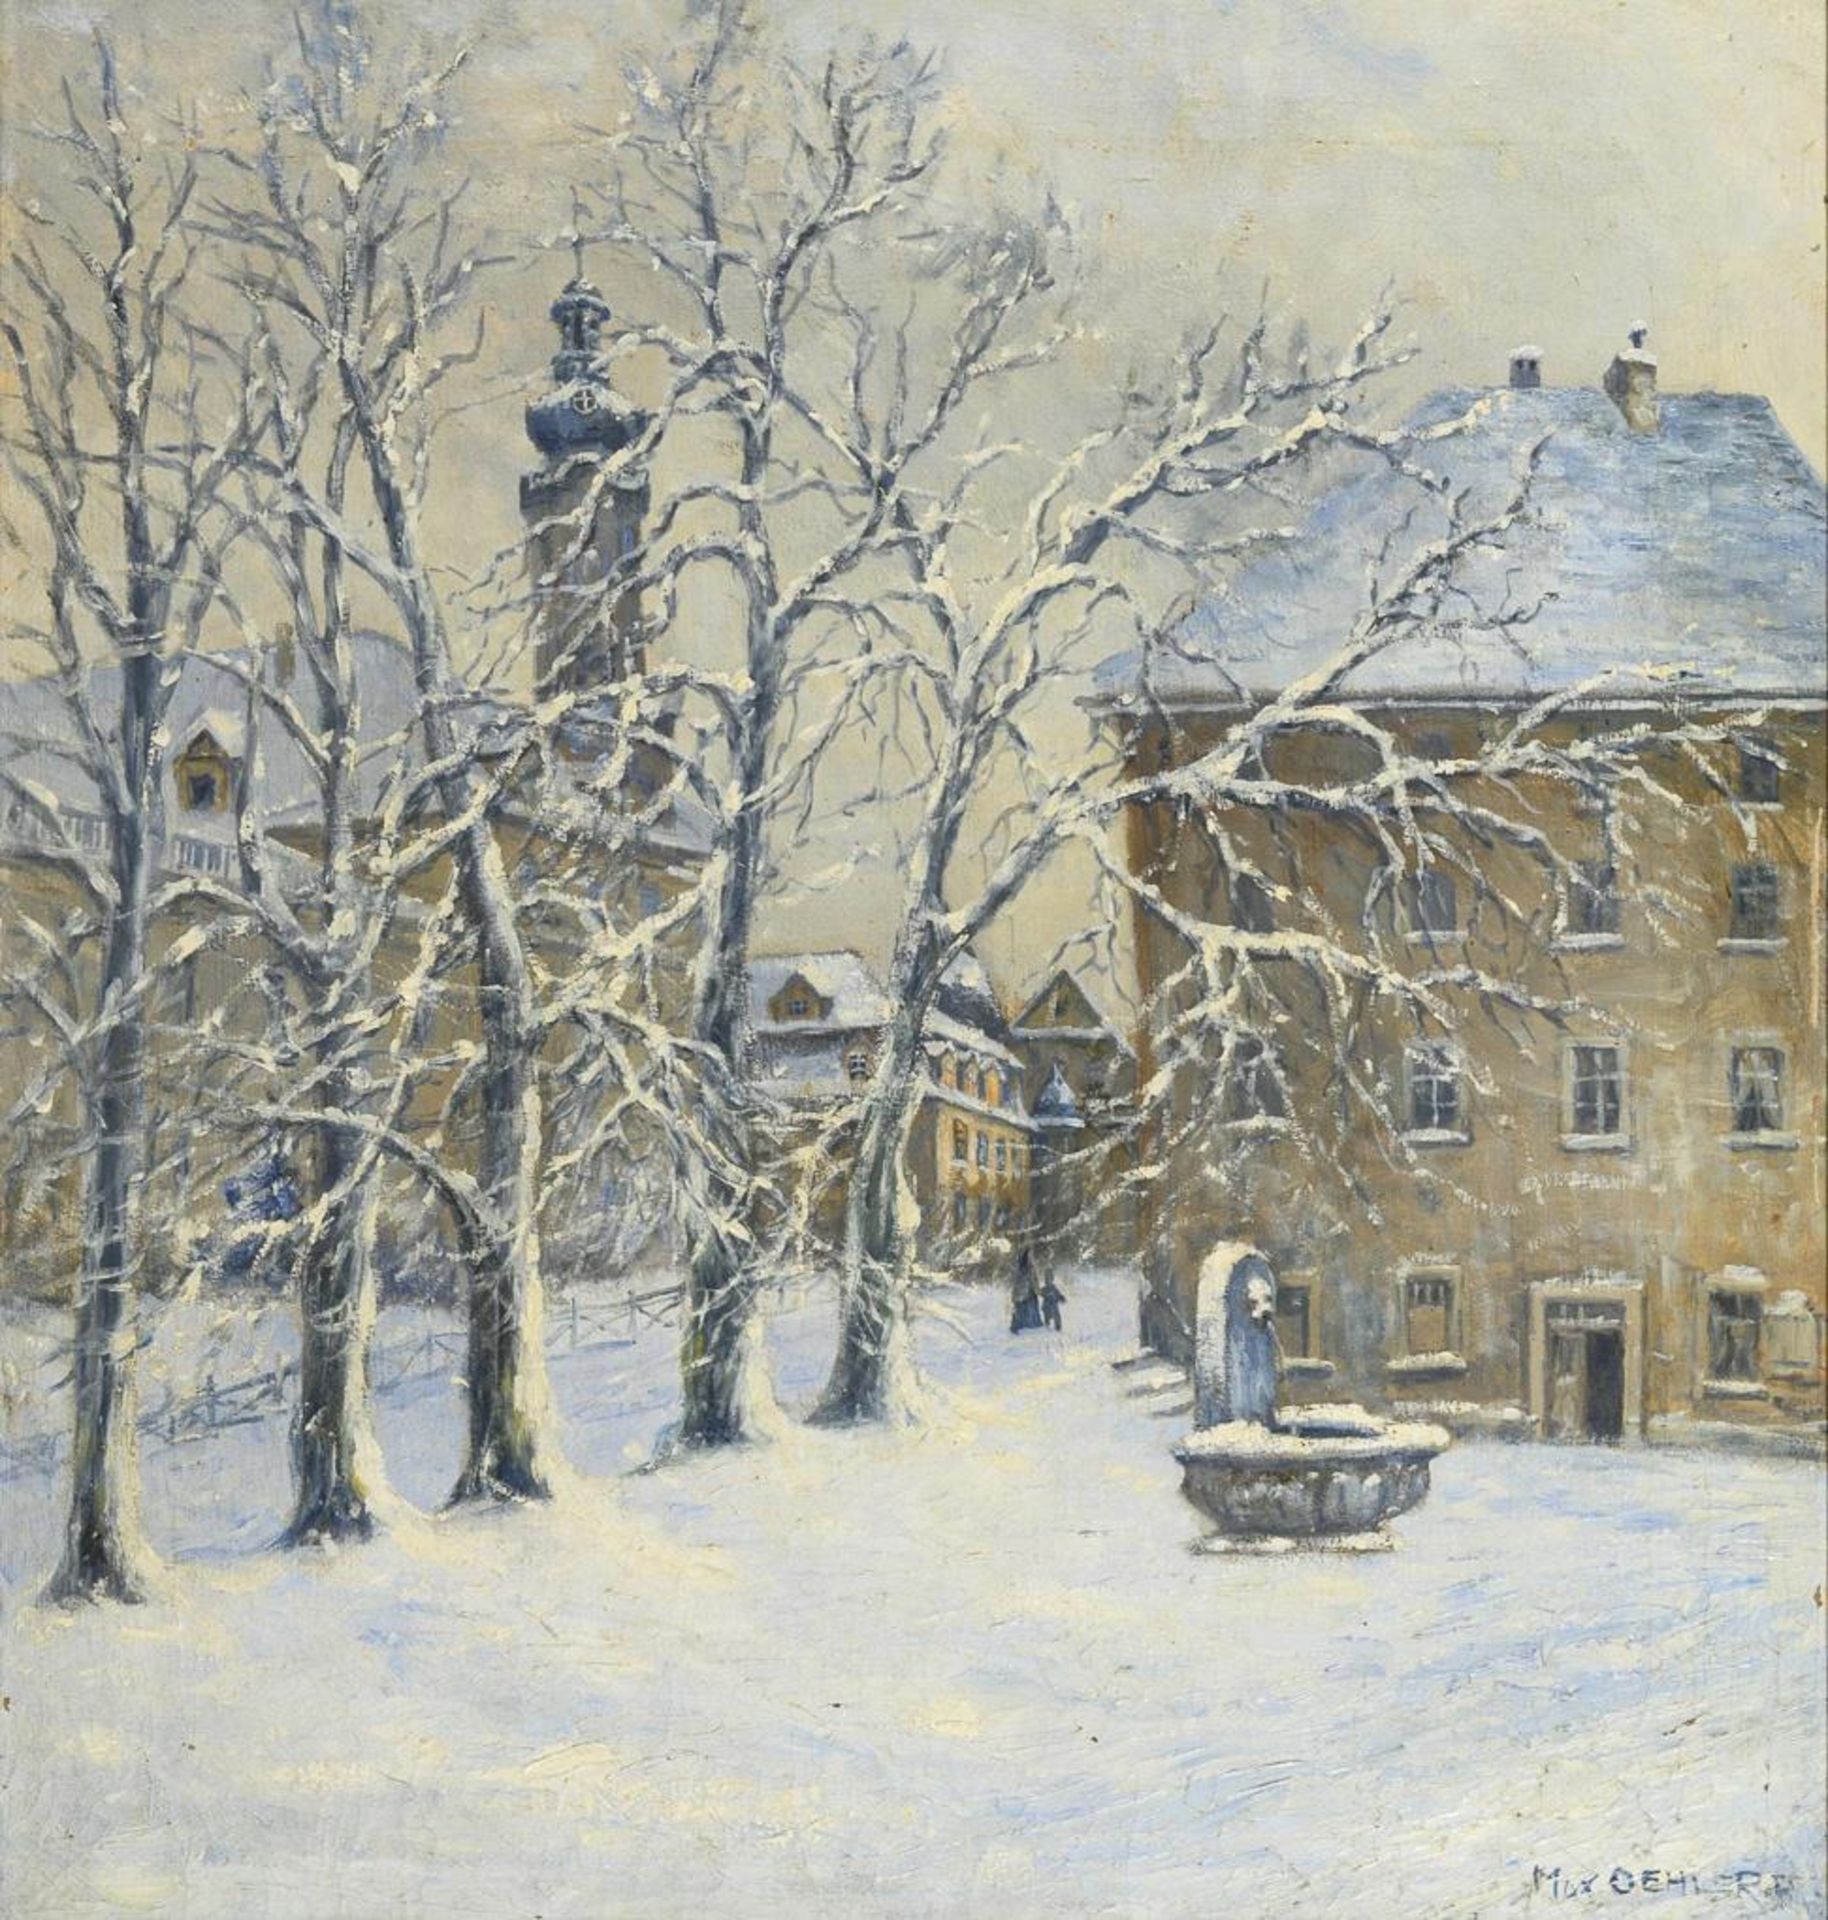 OEHLER, Max (1881 Eisenach - 1943 Weimar). Burgplatz in Weimar im Winter.